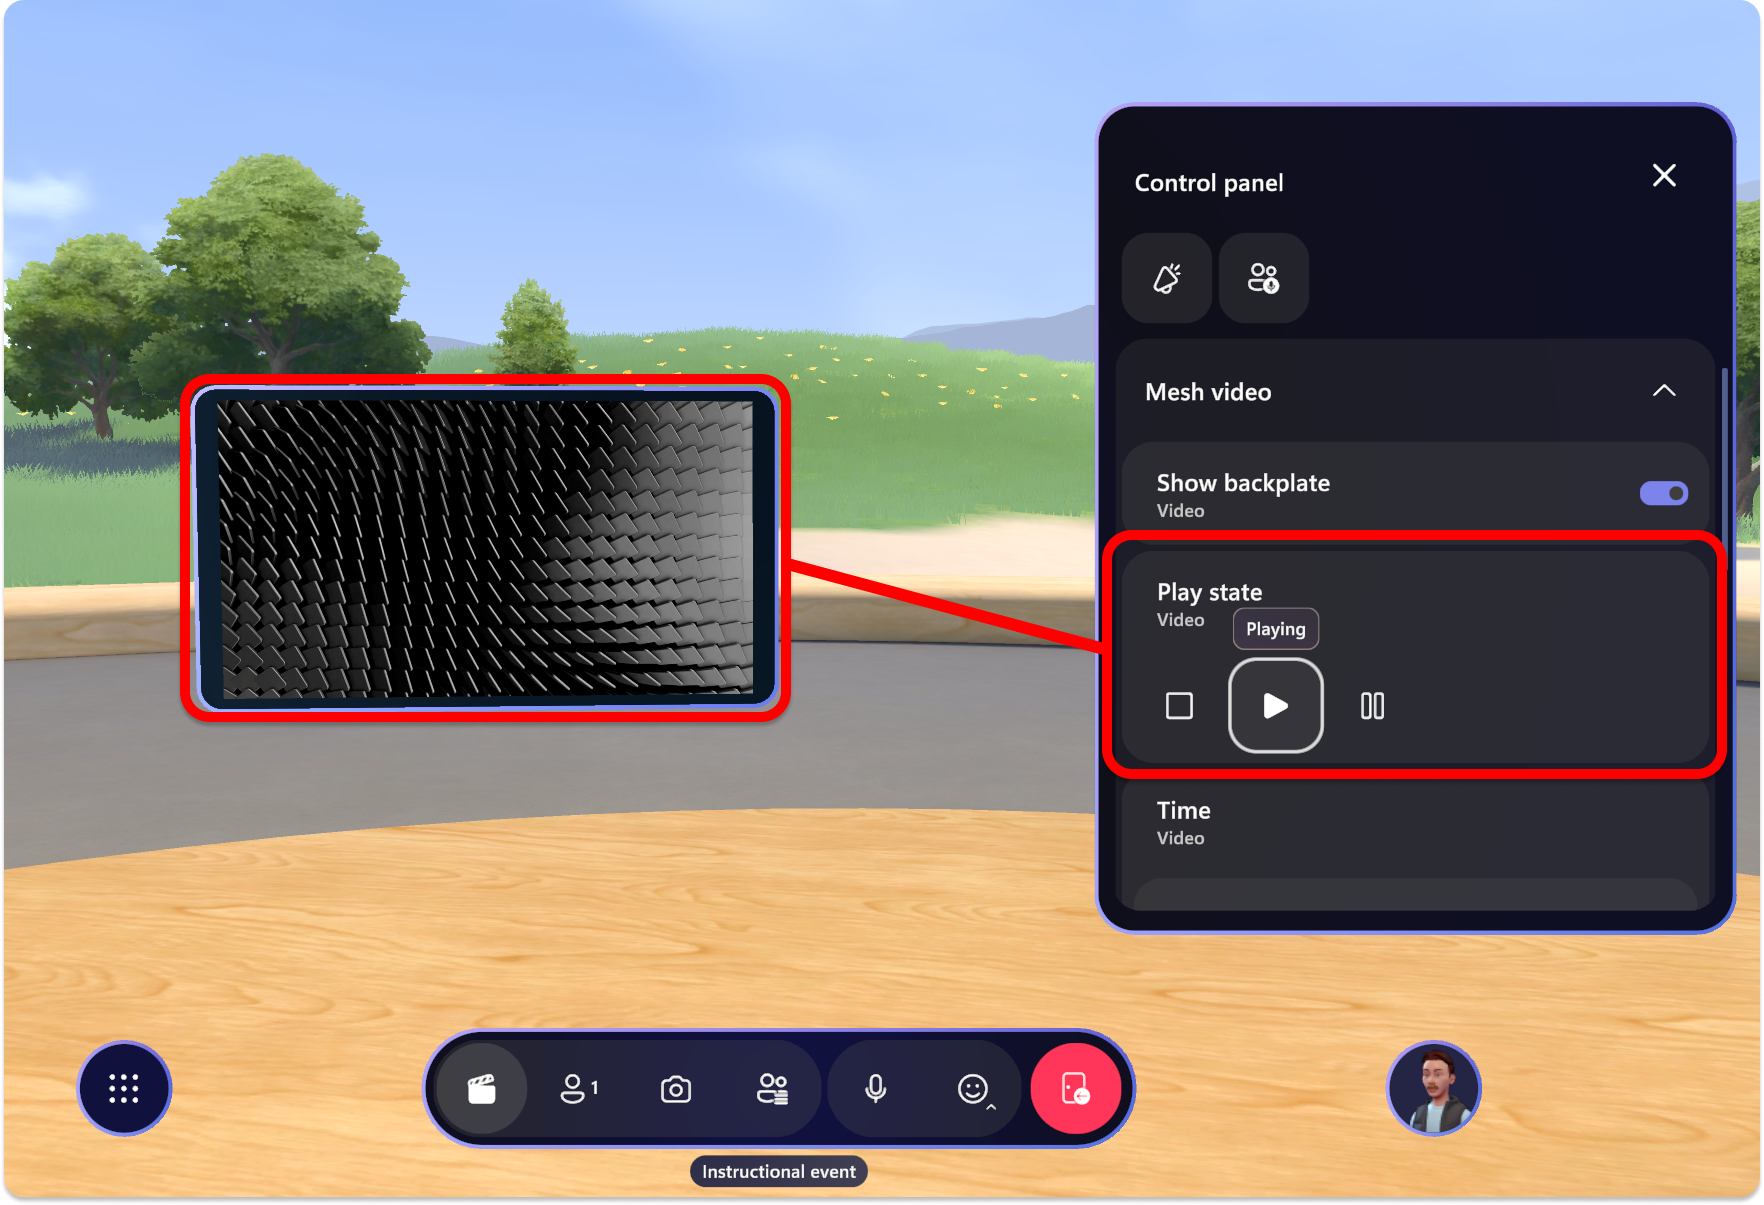 Captura de pantalla de la aplicación Mesh, el panel de control que reproduce un objeto de vídeo.